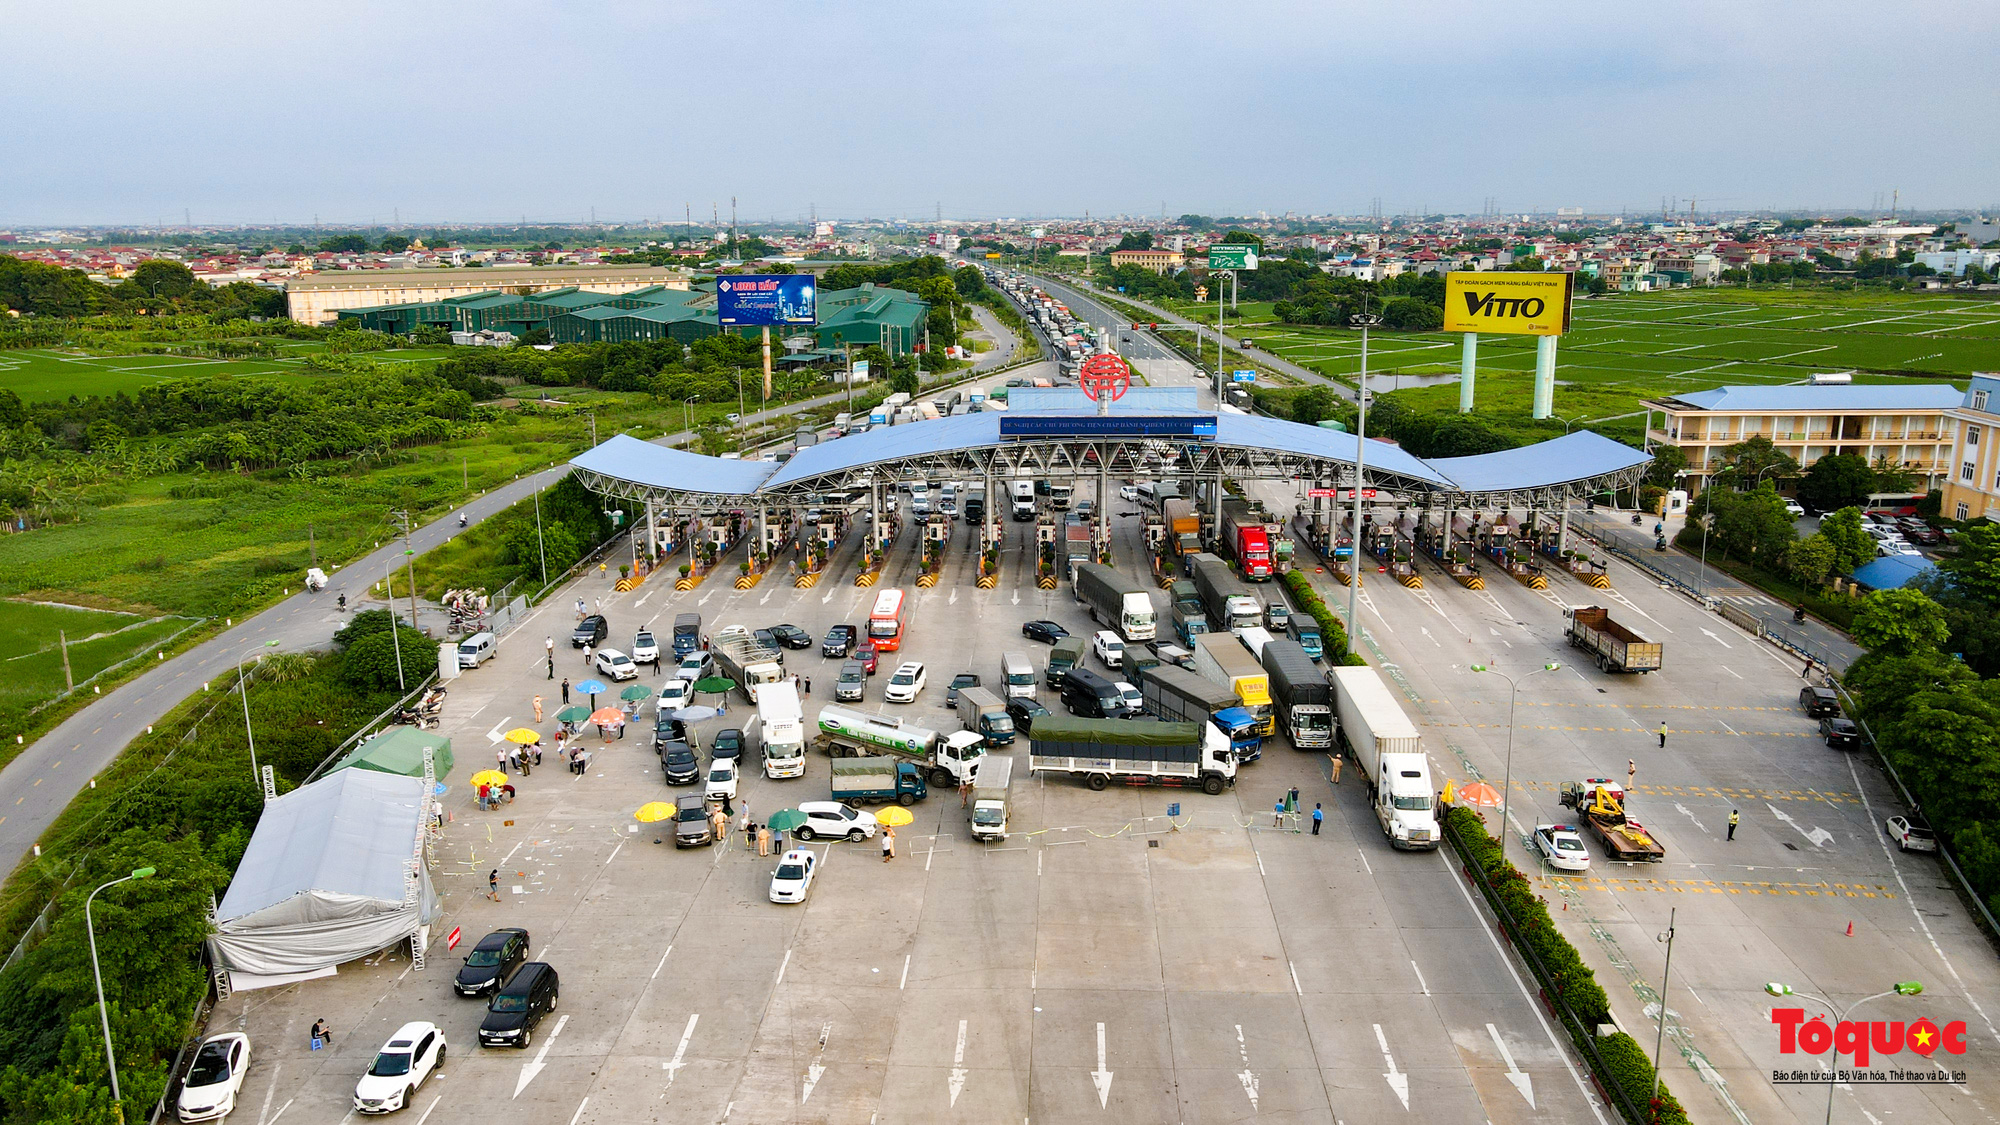 Hà Nội: Hình ảnh phương tiện xếp hàng dài cả km tại cửa ngõ phía Nam Thủ đô - Ảnh 3.